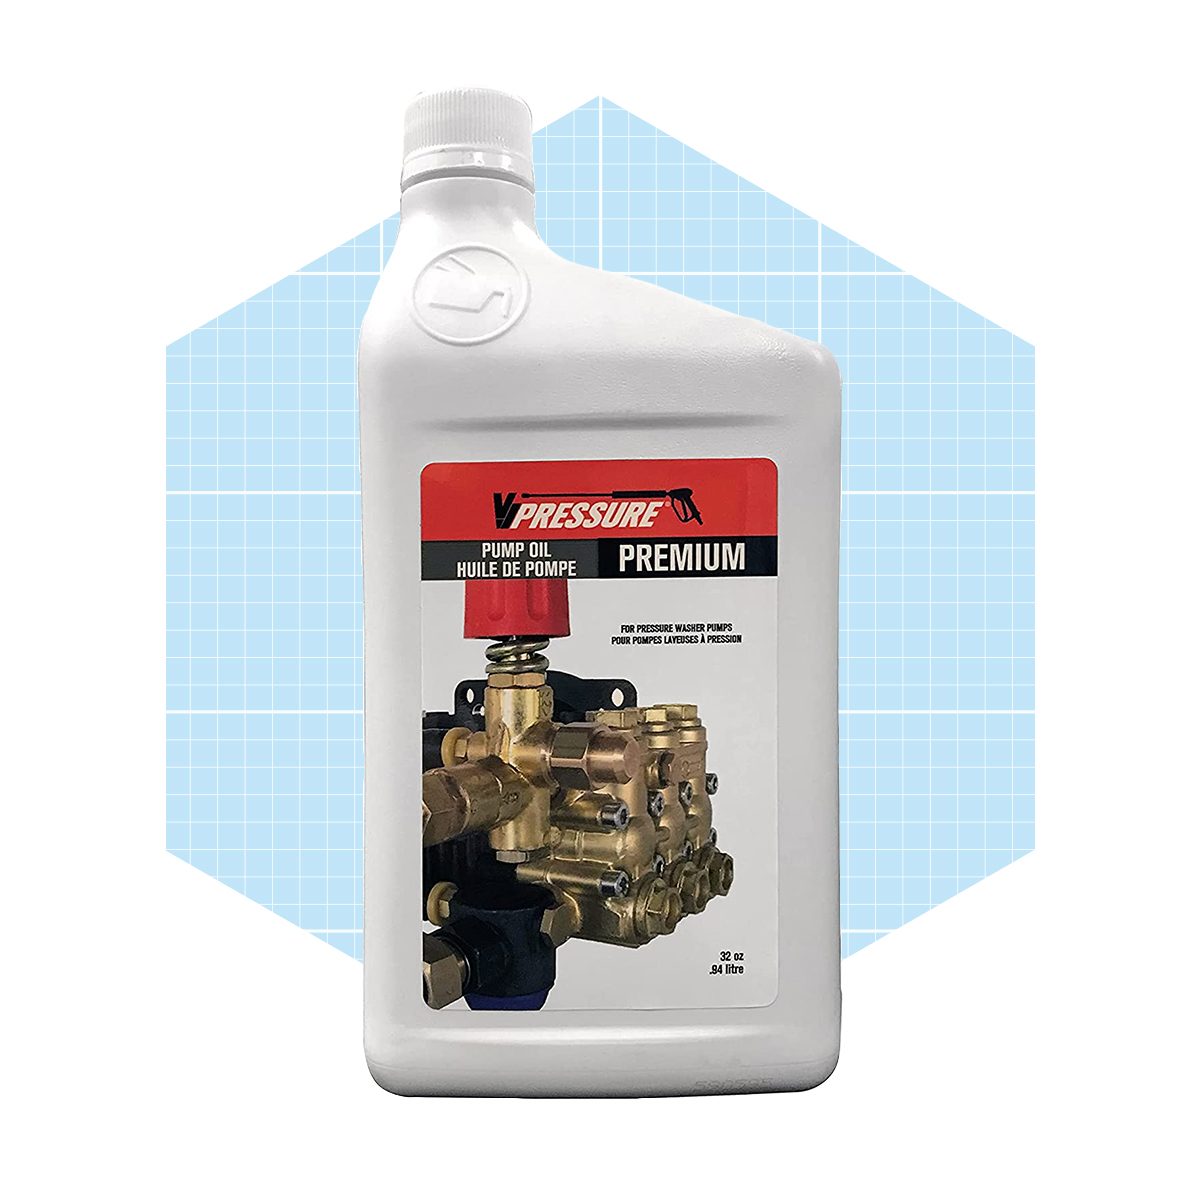 Fhm Pressure Washer Pump Oil Via Amazon.com